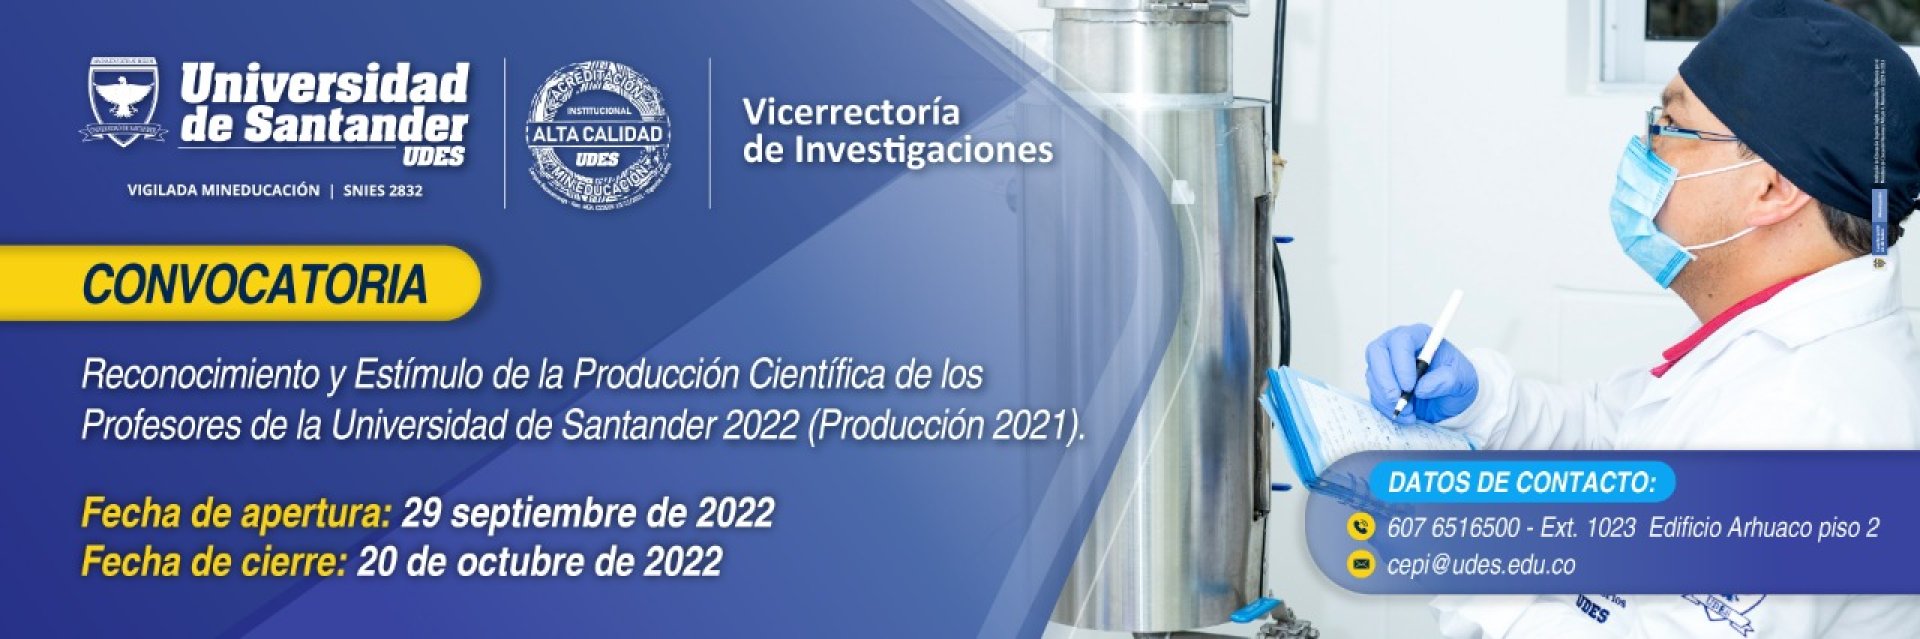 Convocatoria para el reconocimiento y estímulo de la producción científica de los profesores de la Universidad de Santander